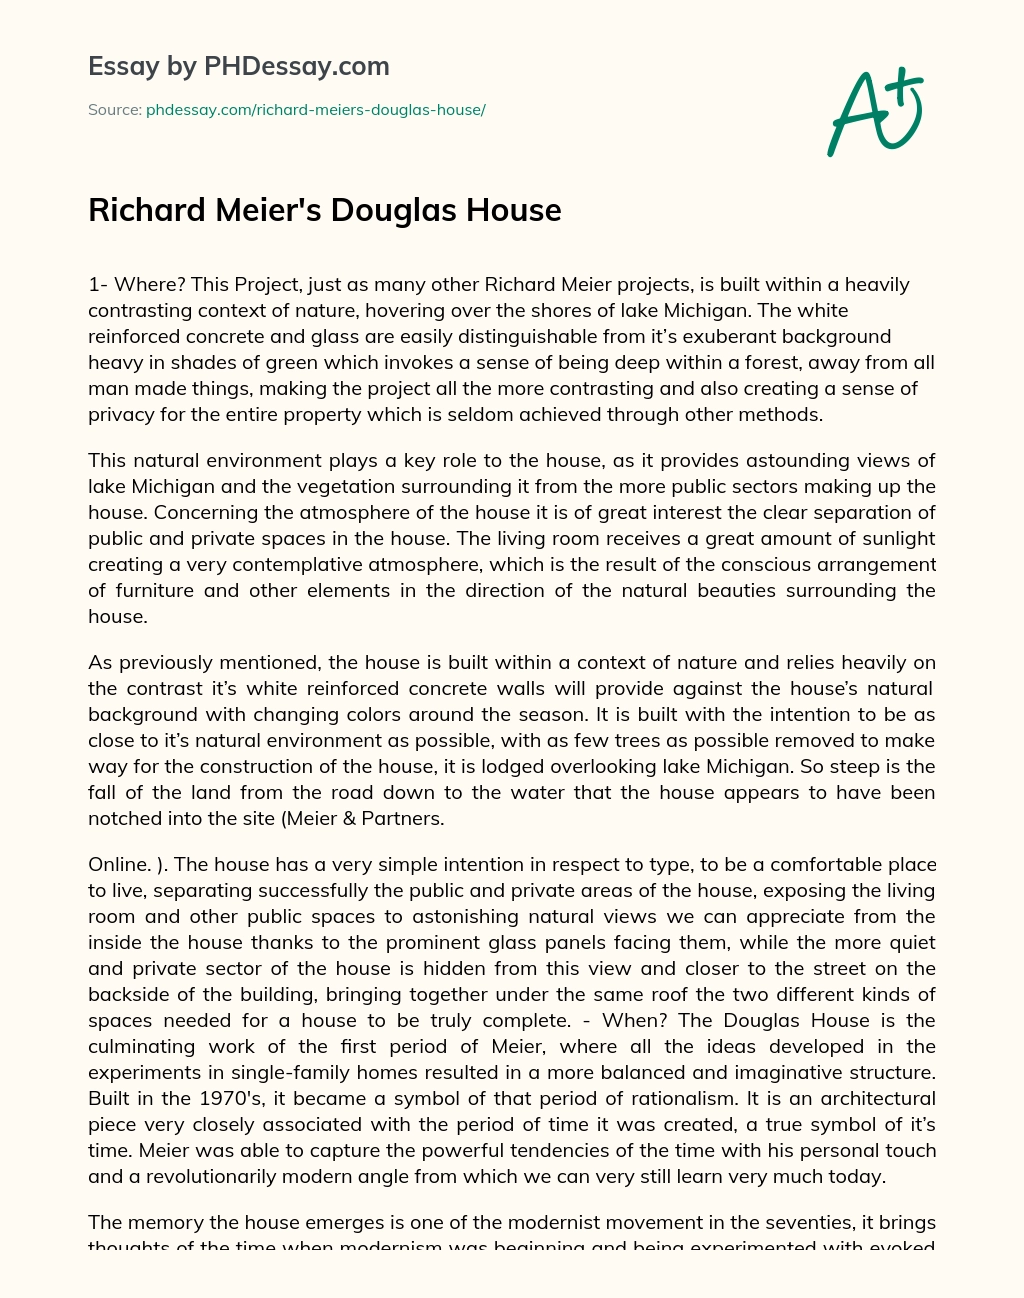 Richard Meier’s Douglas House essay